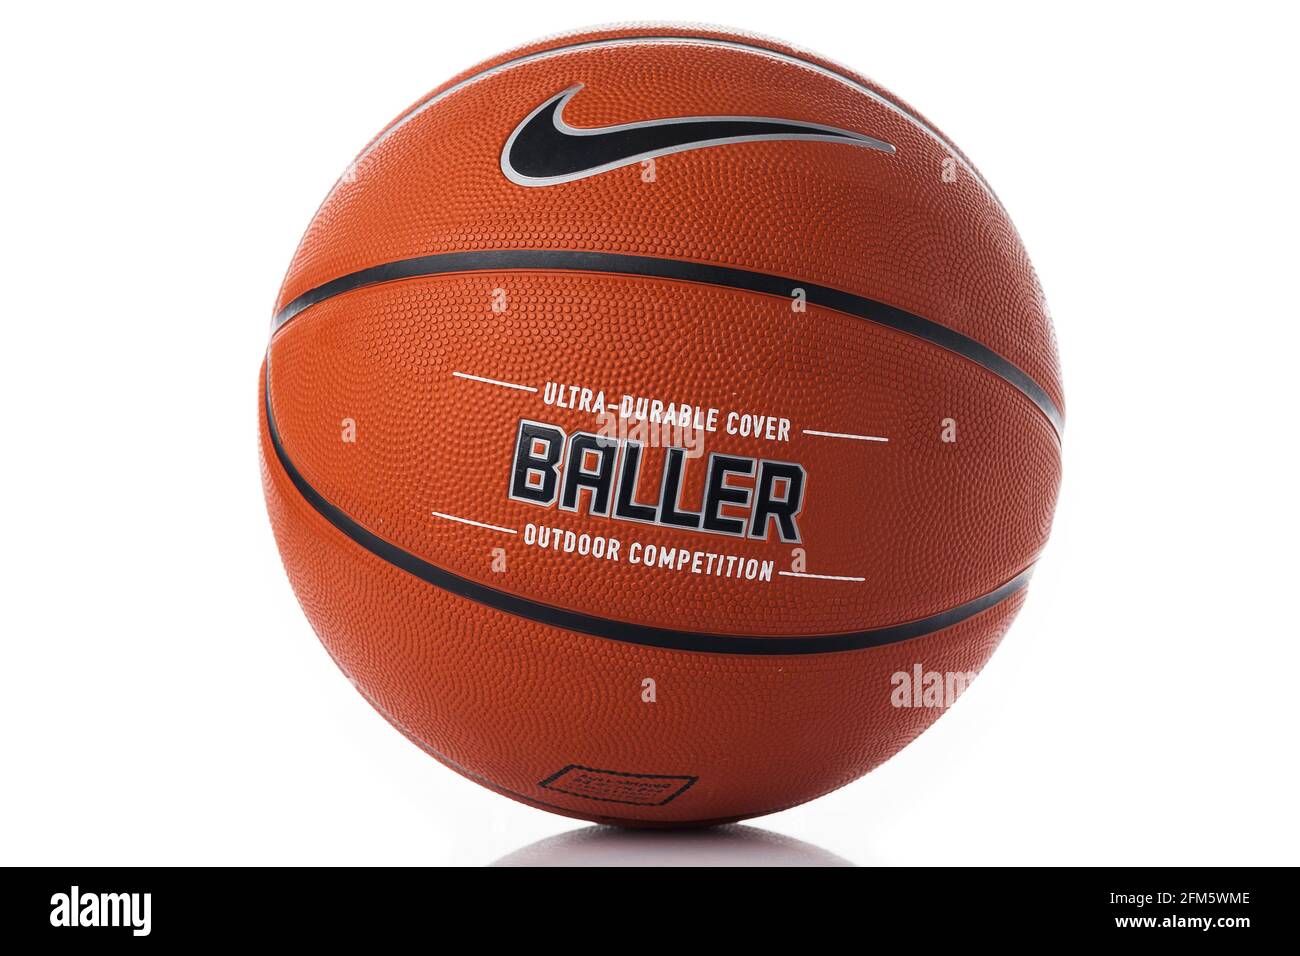 Marca Nike, balón de baloncesto Nike Baller. Bola exterior de caucho  naranja, cubierta ultrarresistente, primeros planos sobre fondo negro  Fotografía de stock - Alamy